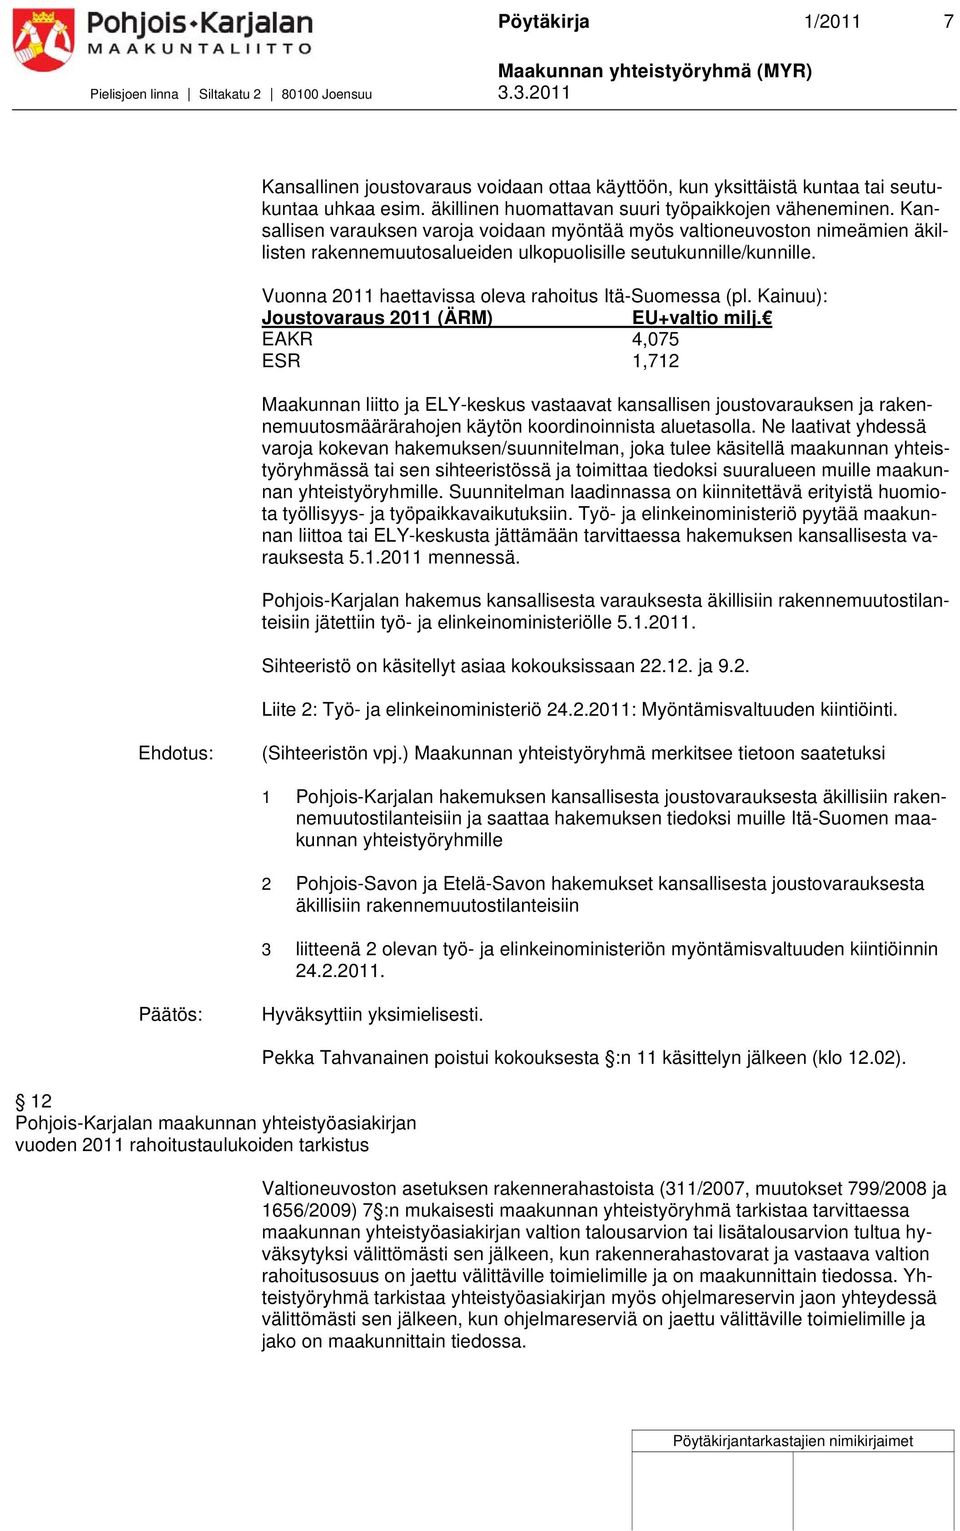 Vuonna 2011 haettavissa oleva rahoitus Itä-Suomessa (pl. Kainuu): Joustovaraus 2011 (ÄRM) EU+valtio milj.